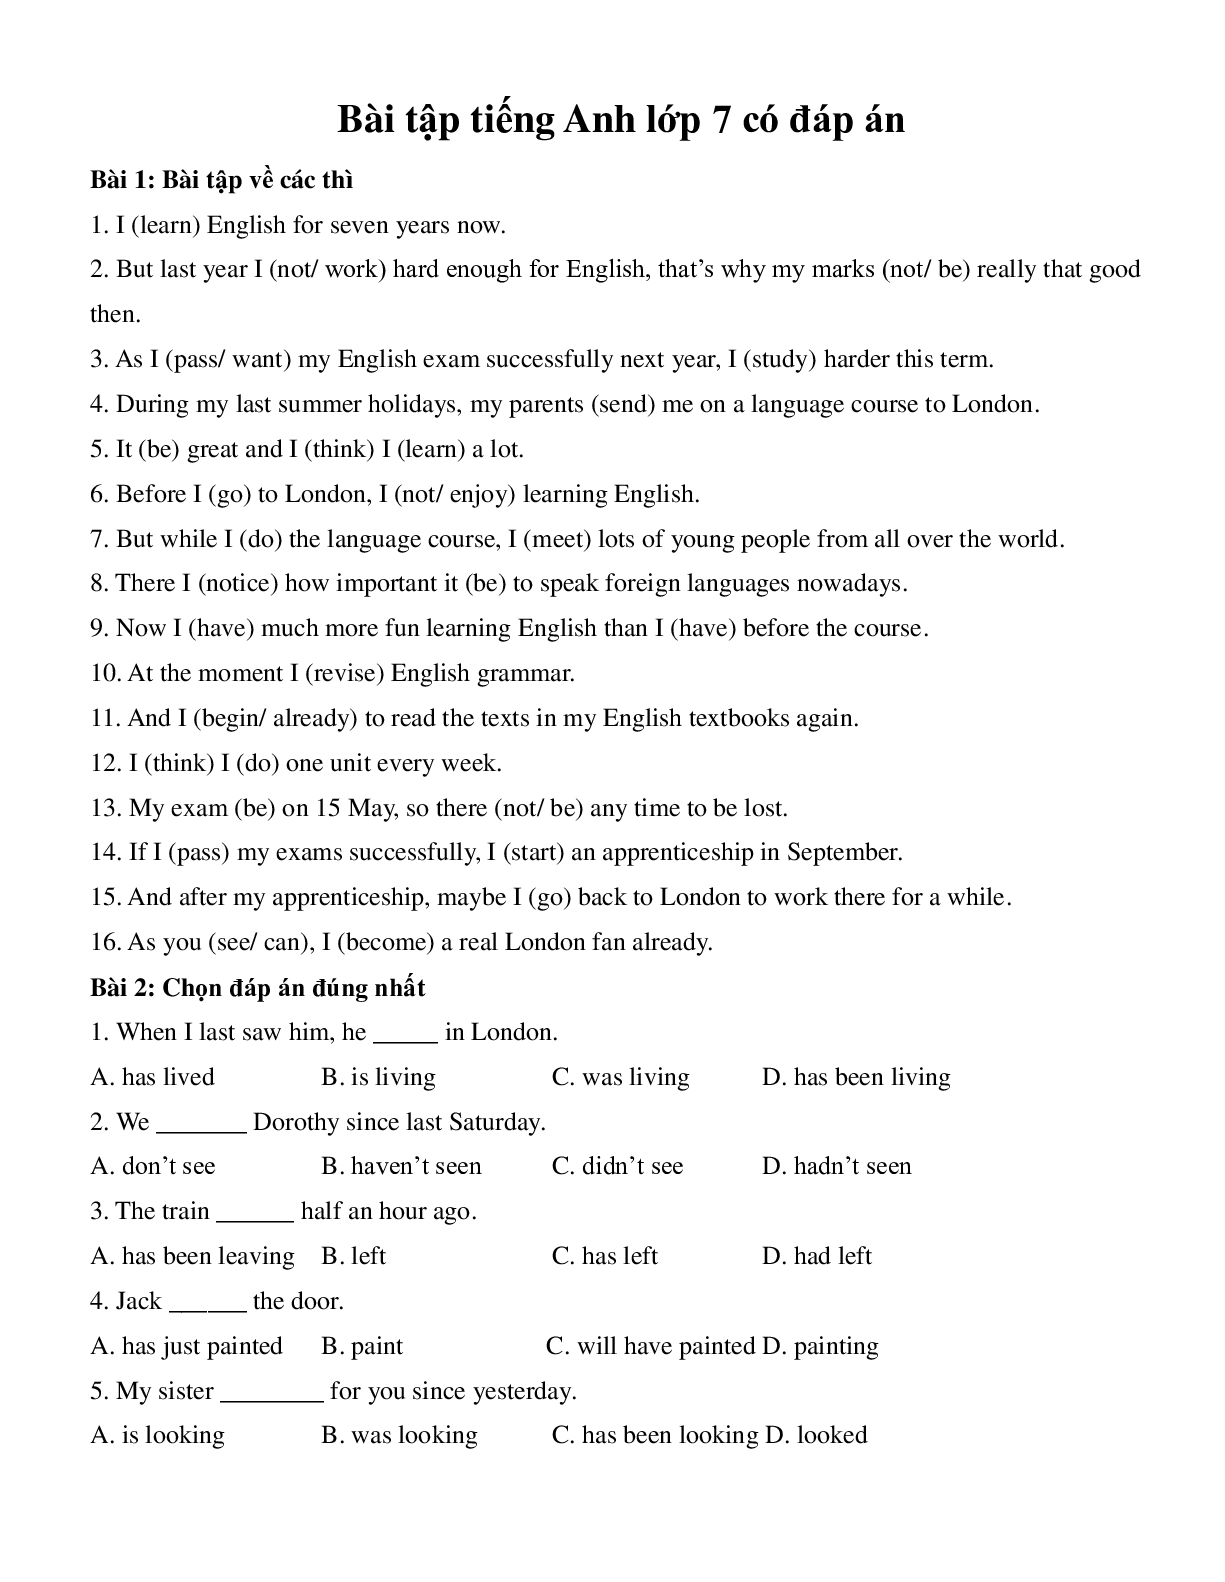 Bài tập Tiếng Anh lớp 7 có đáp án (trang 1)